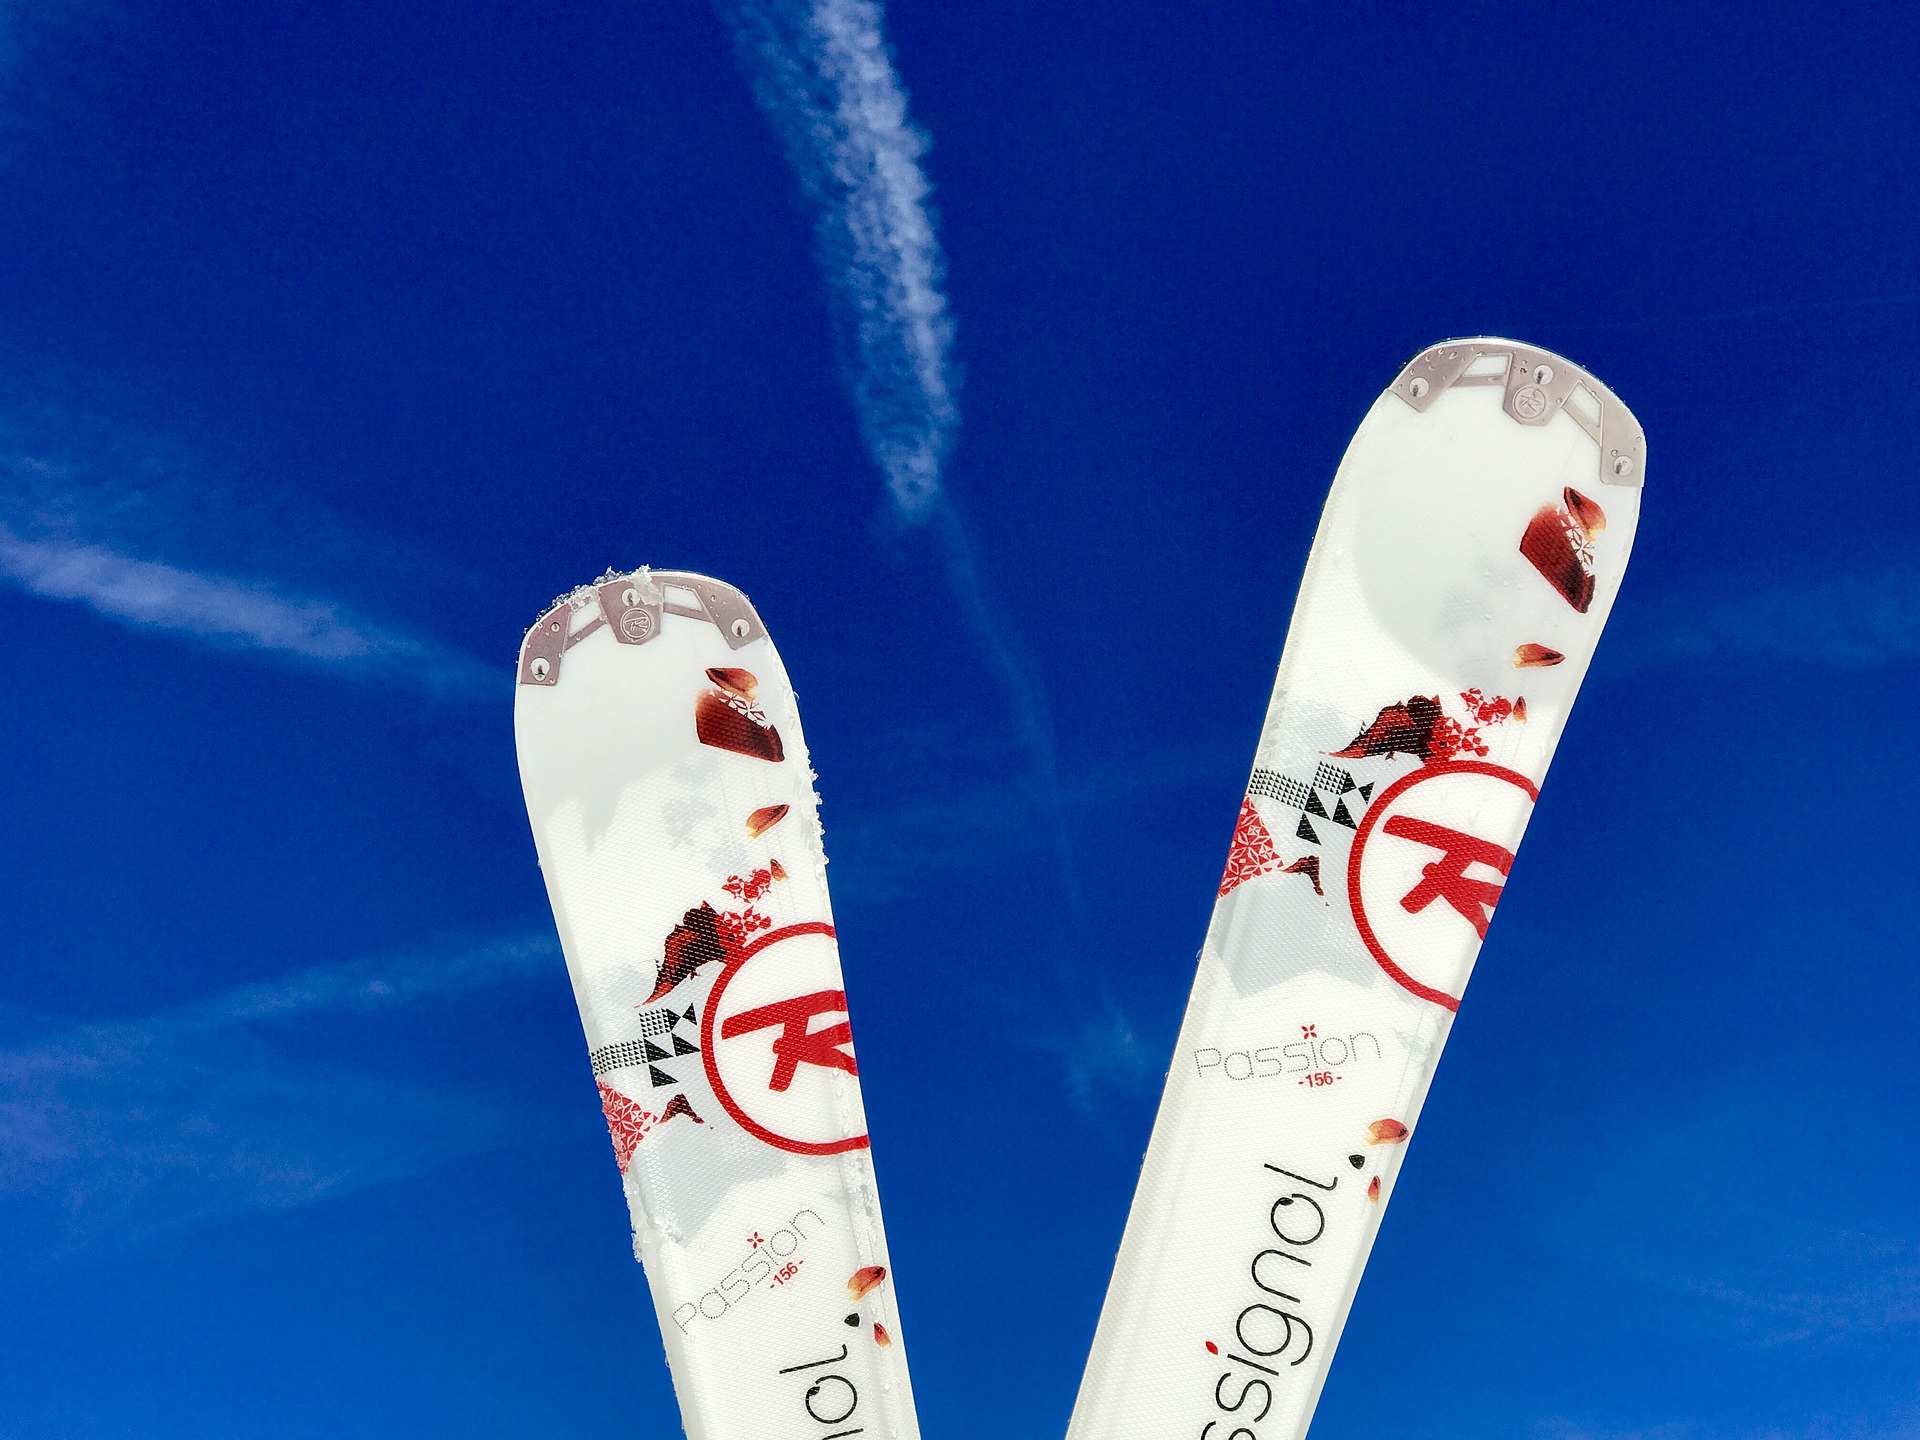 Impossible de perdre vos skis grâce à Resqski - @LuckyLife11 - Pixabay